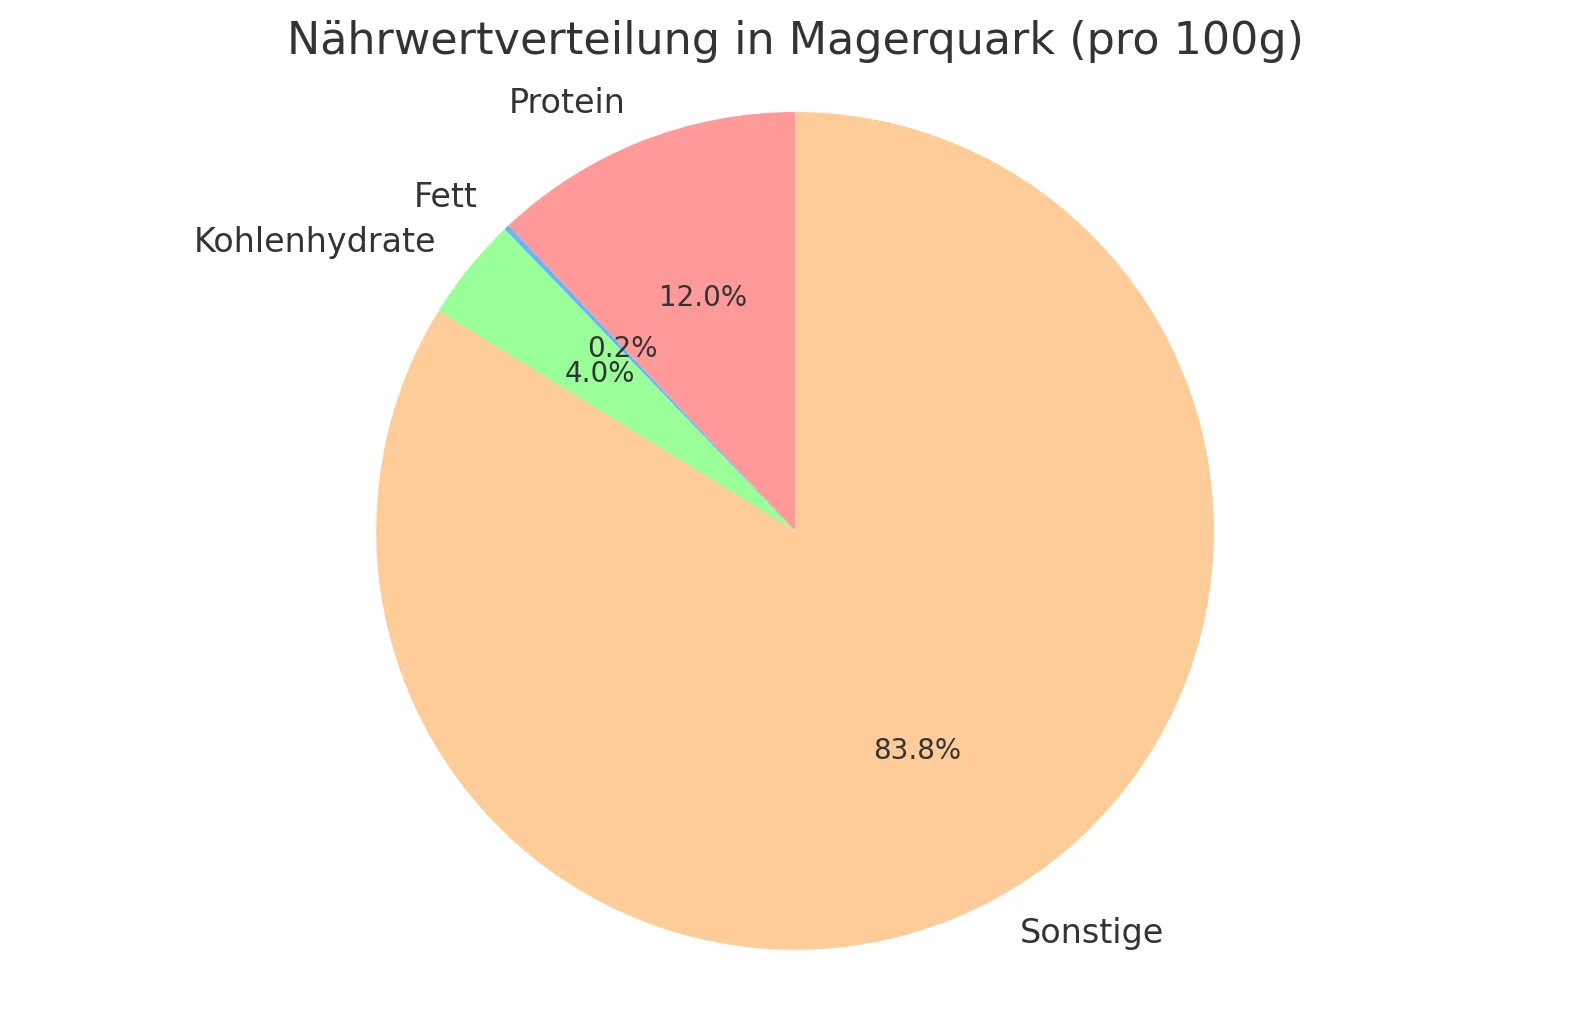 Nährwerteverteilung Magerquark